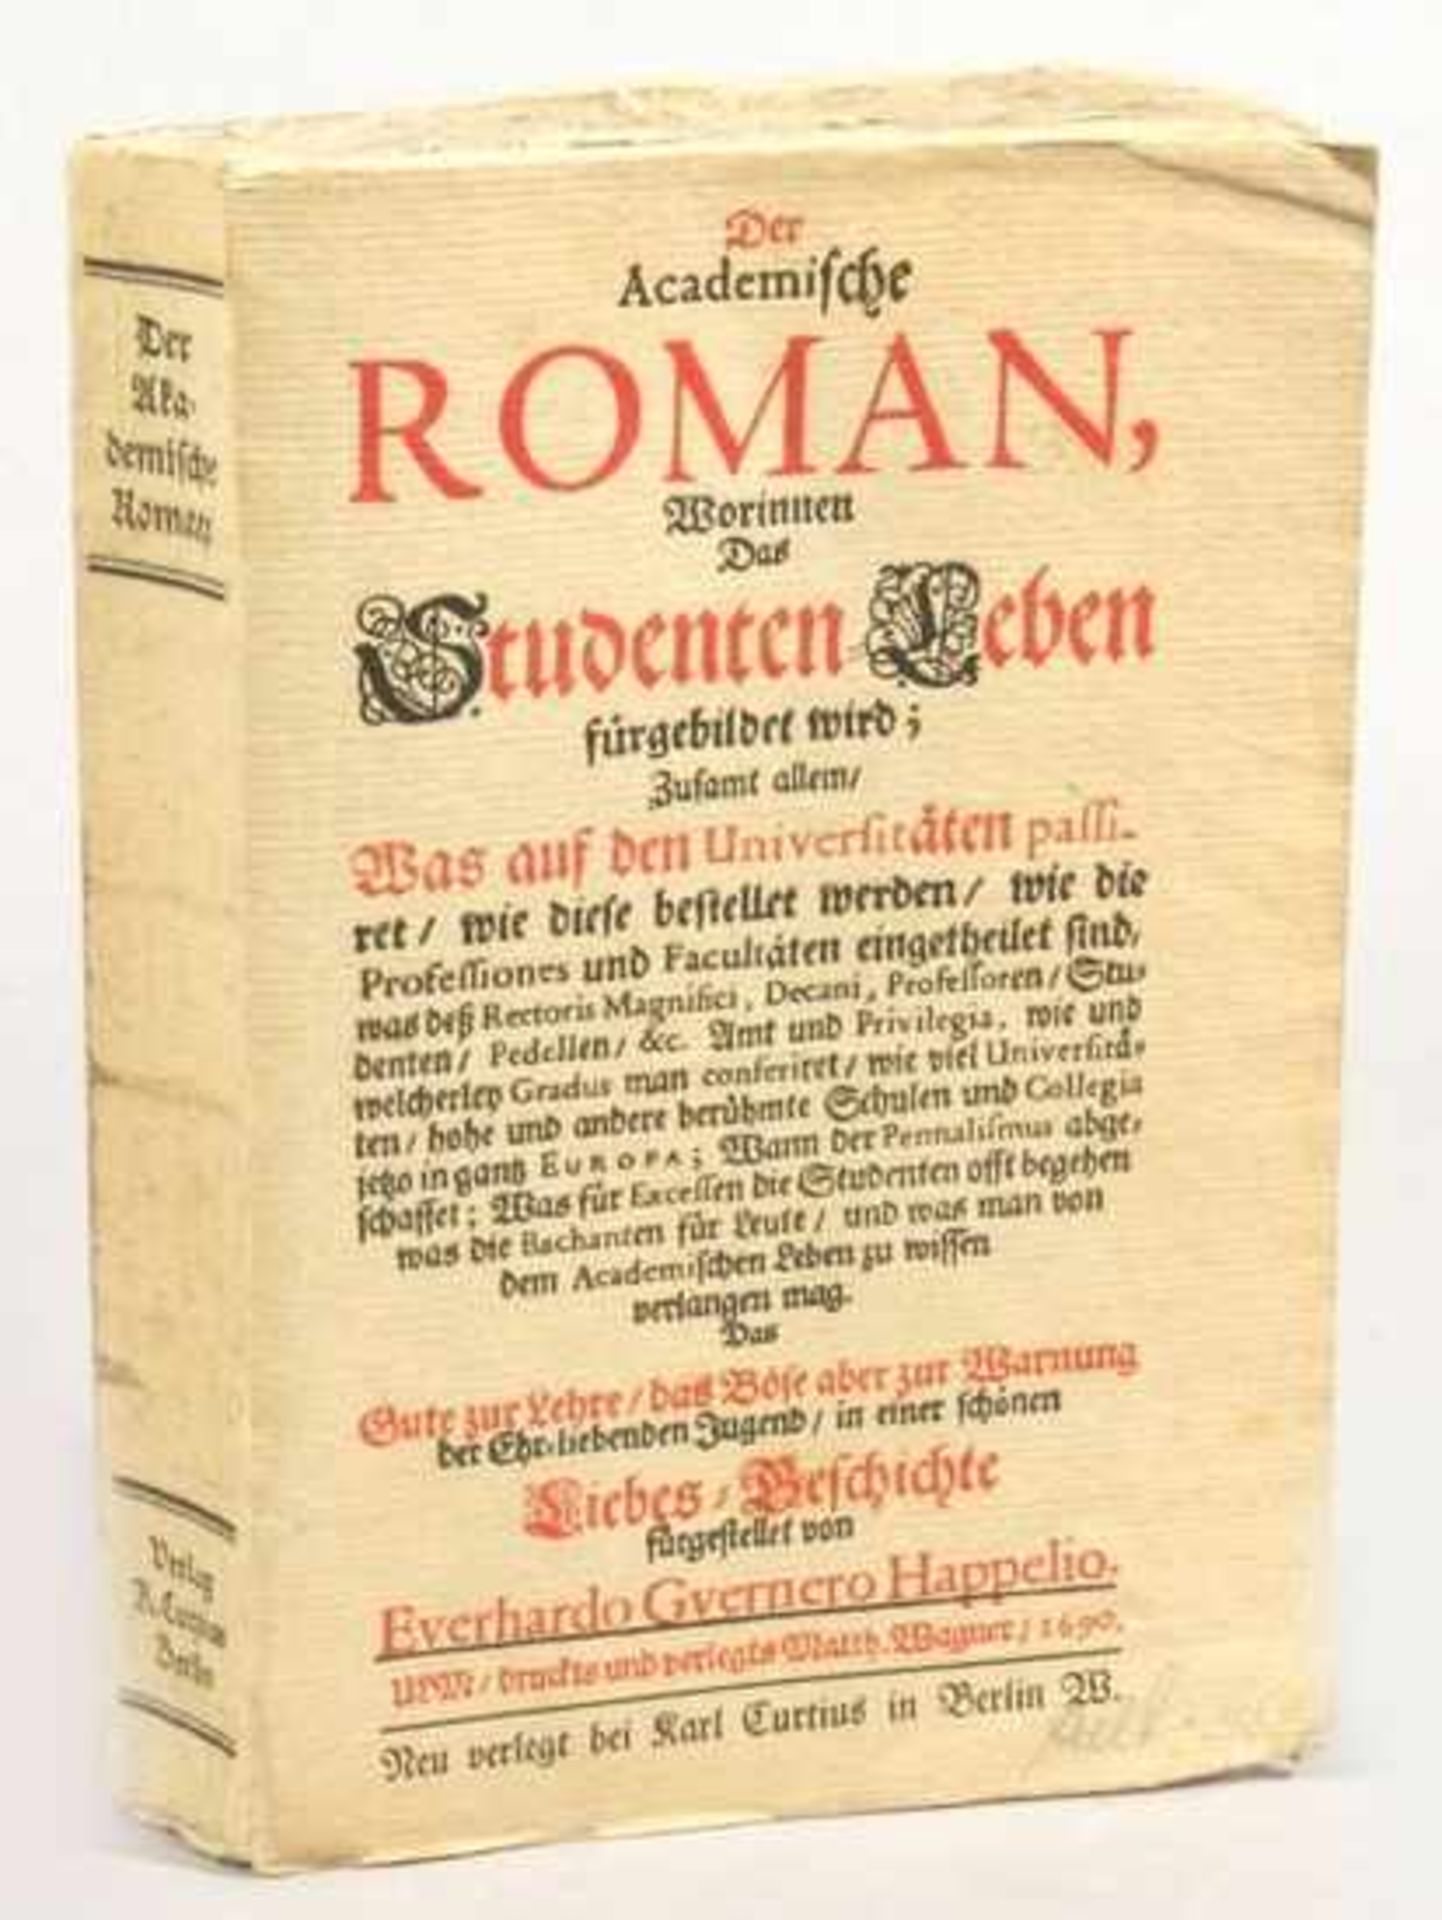 Buch, "Studentenleben", von Eberhard Werner Happel, Faksimilie der Ausgabe von 1690,Gebrauchsspuren